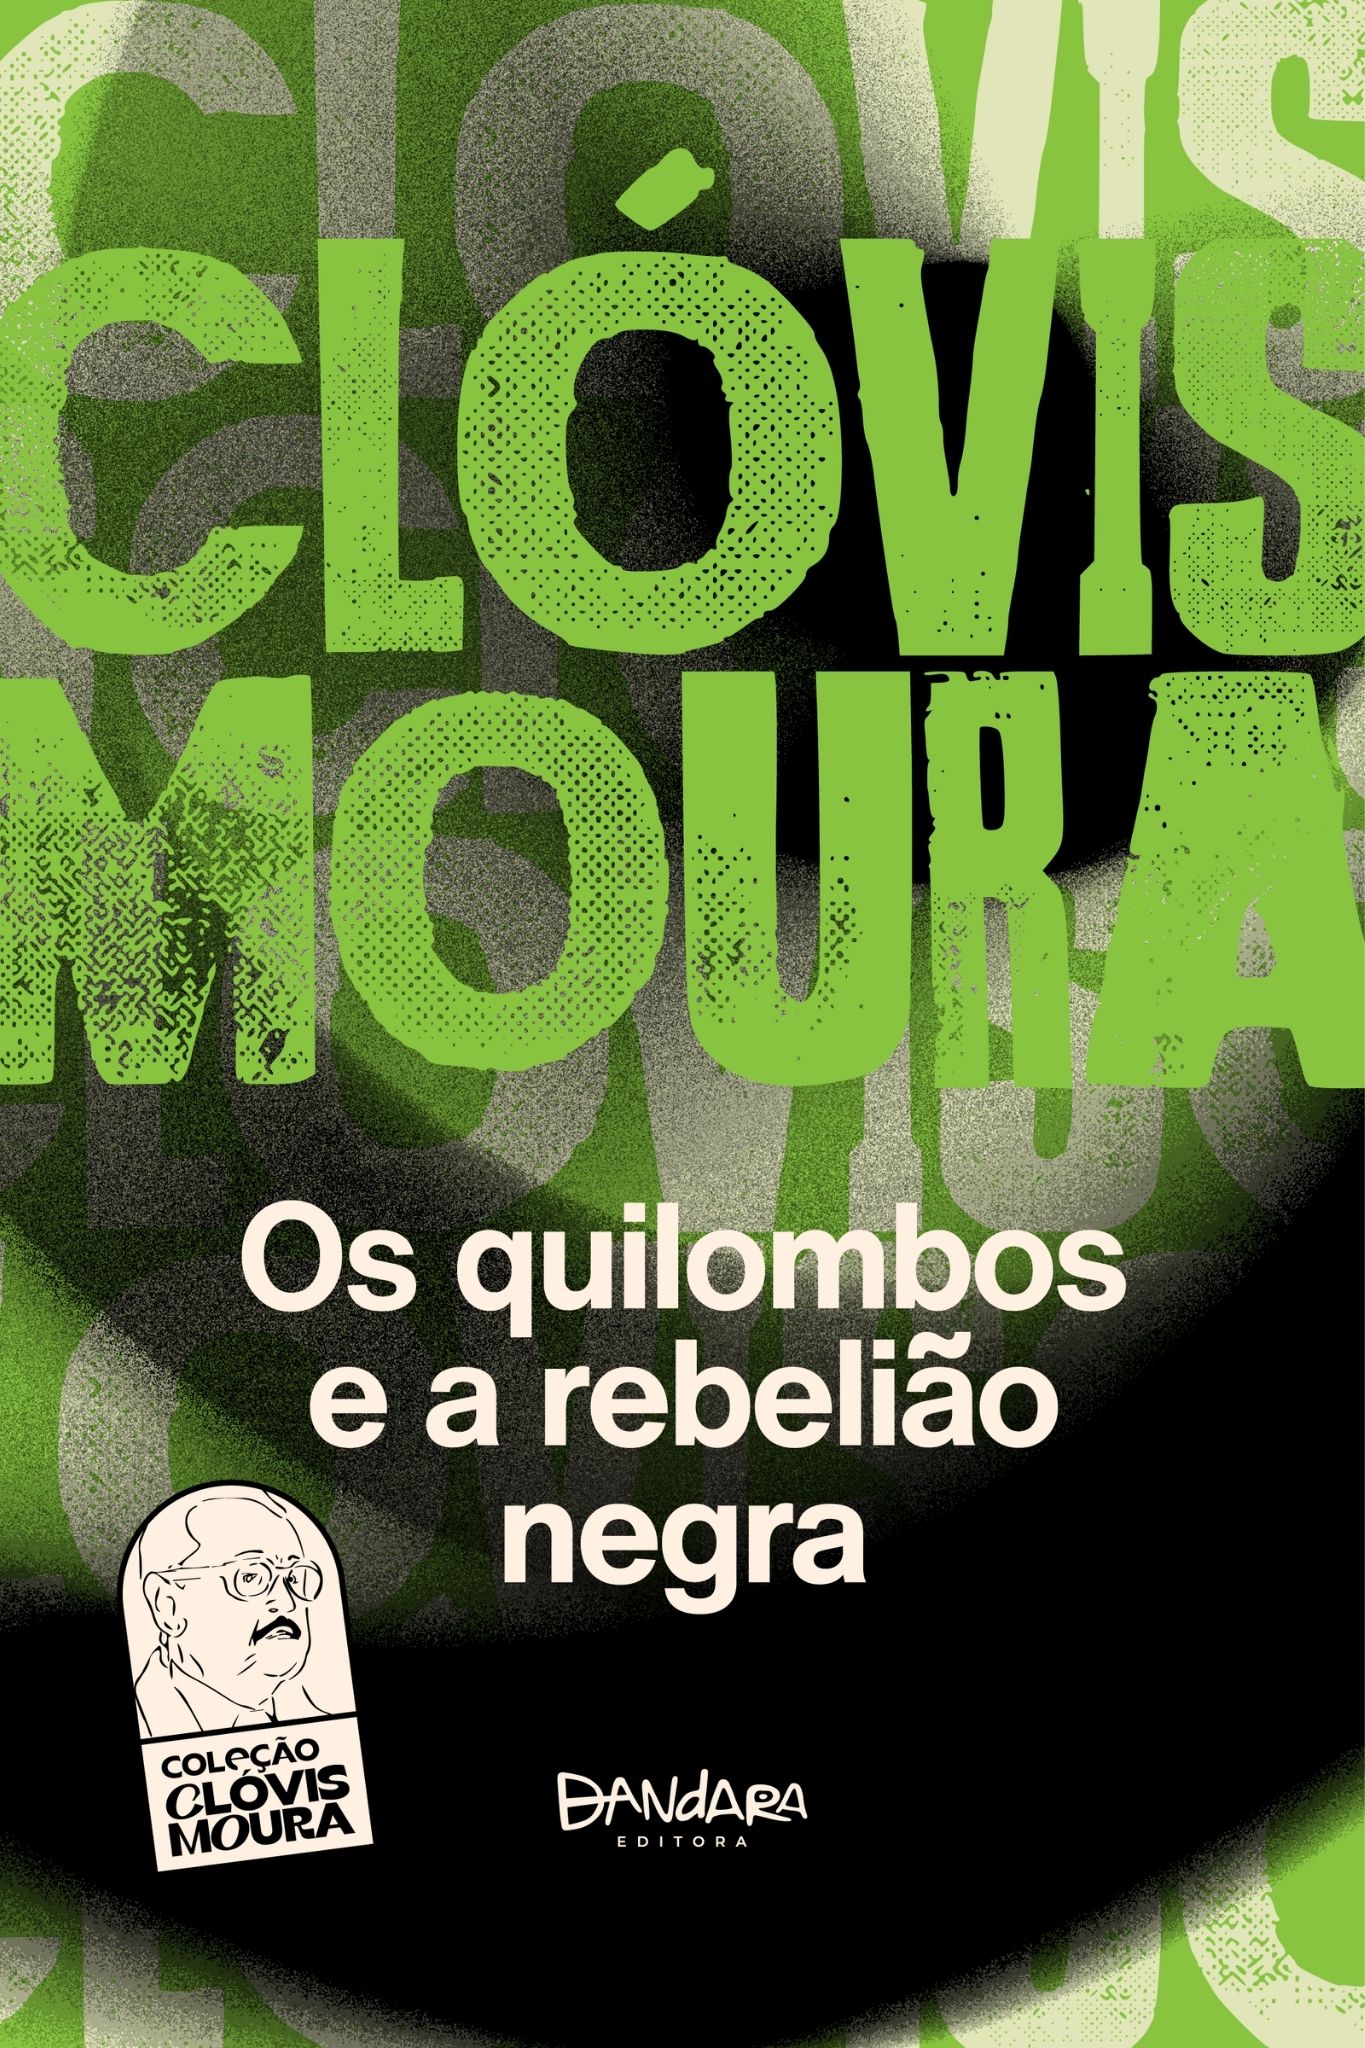 Capa Clóvis Moura: Os quilombos e a rebelião negra